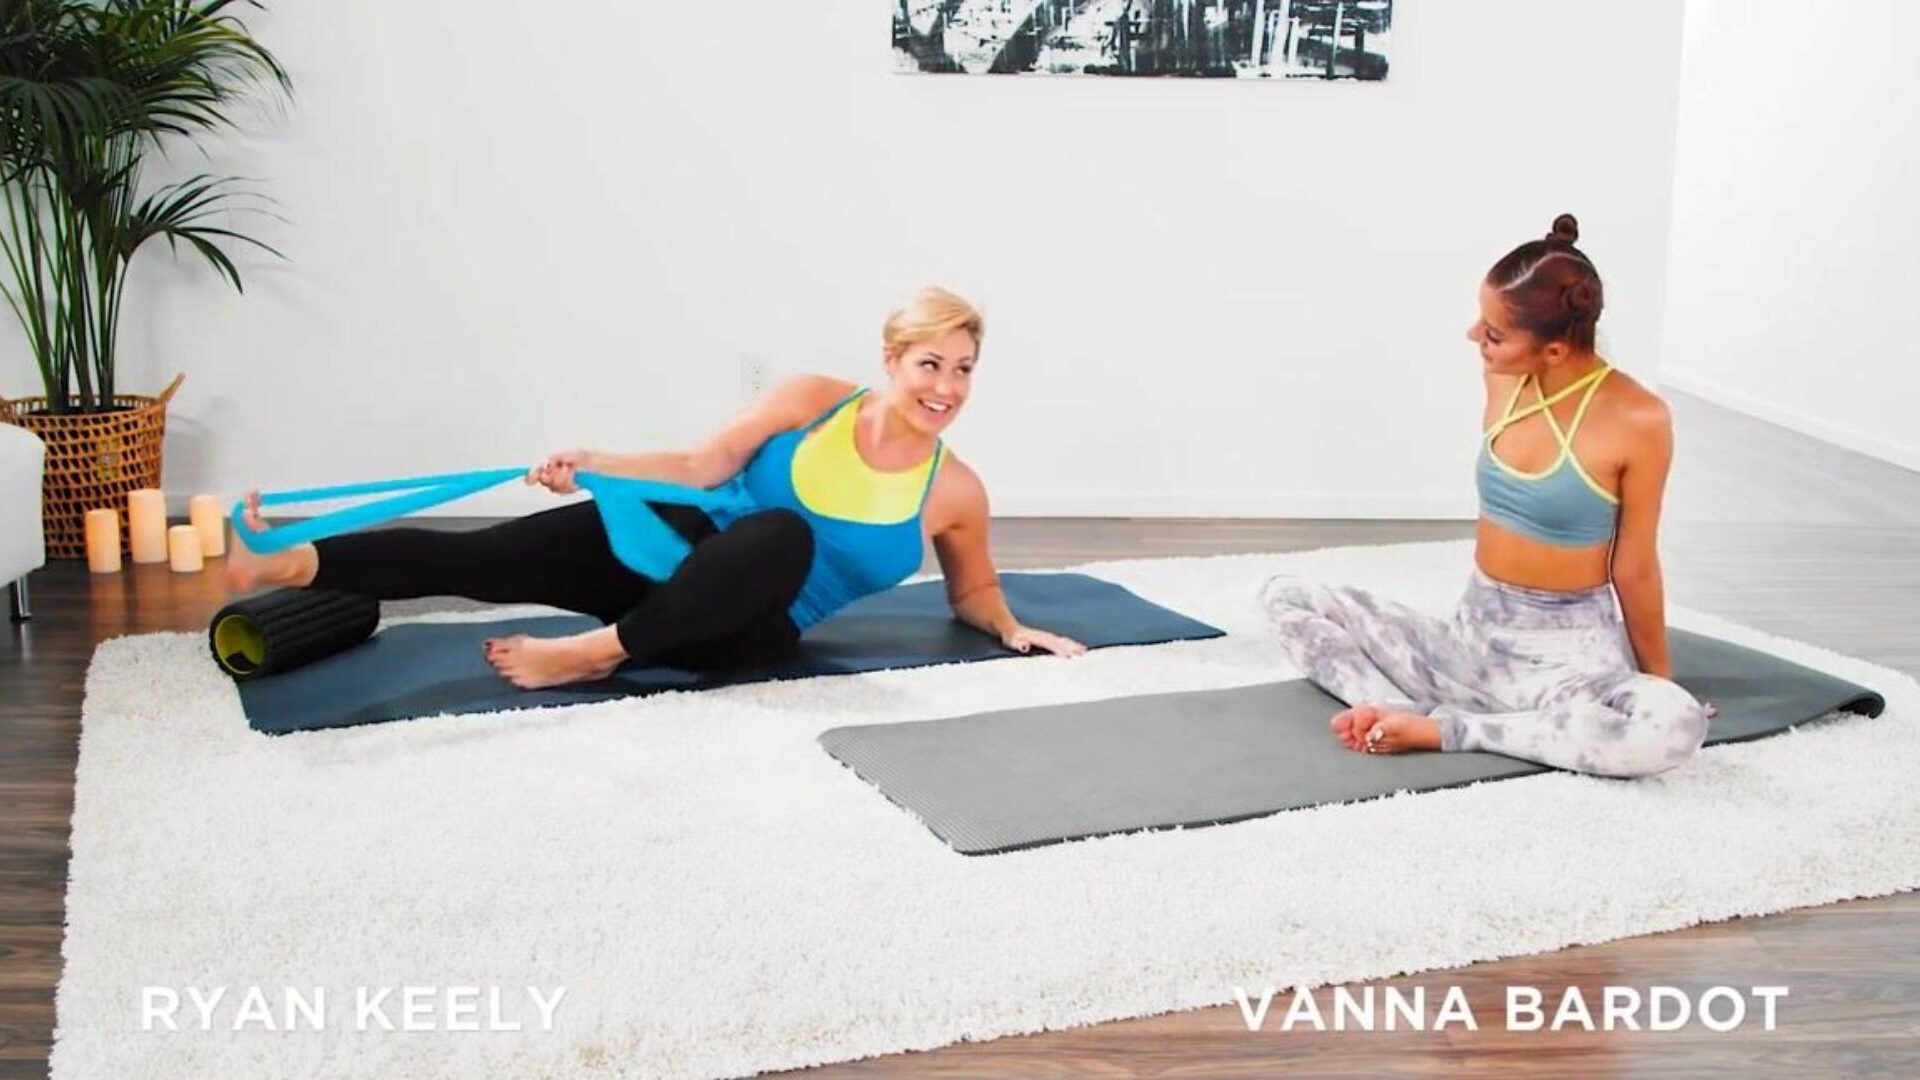 Vanna Bardot和Ryan Keely进行了指法瑜伽训练Vanna Bardot和Ryan Keely